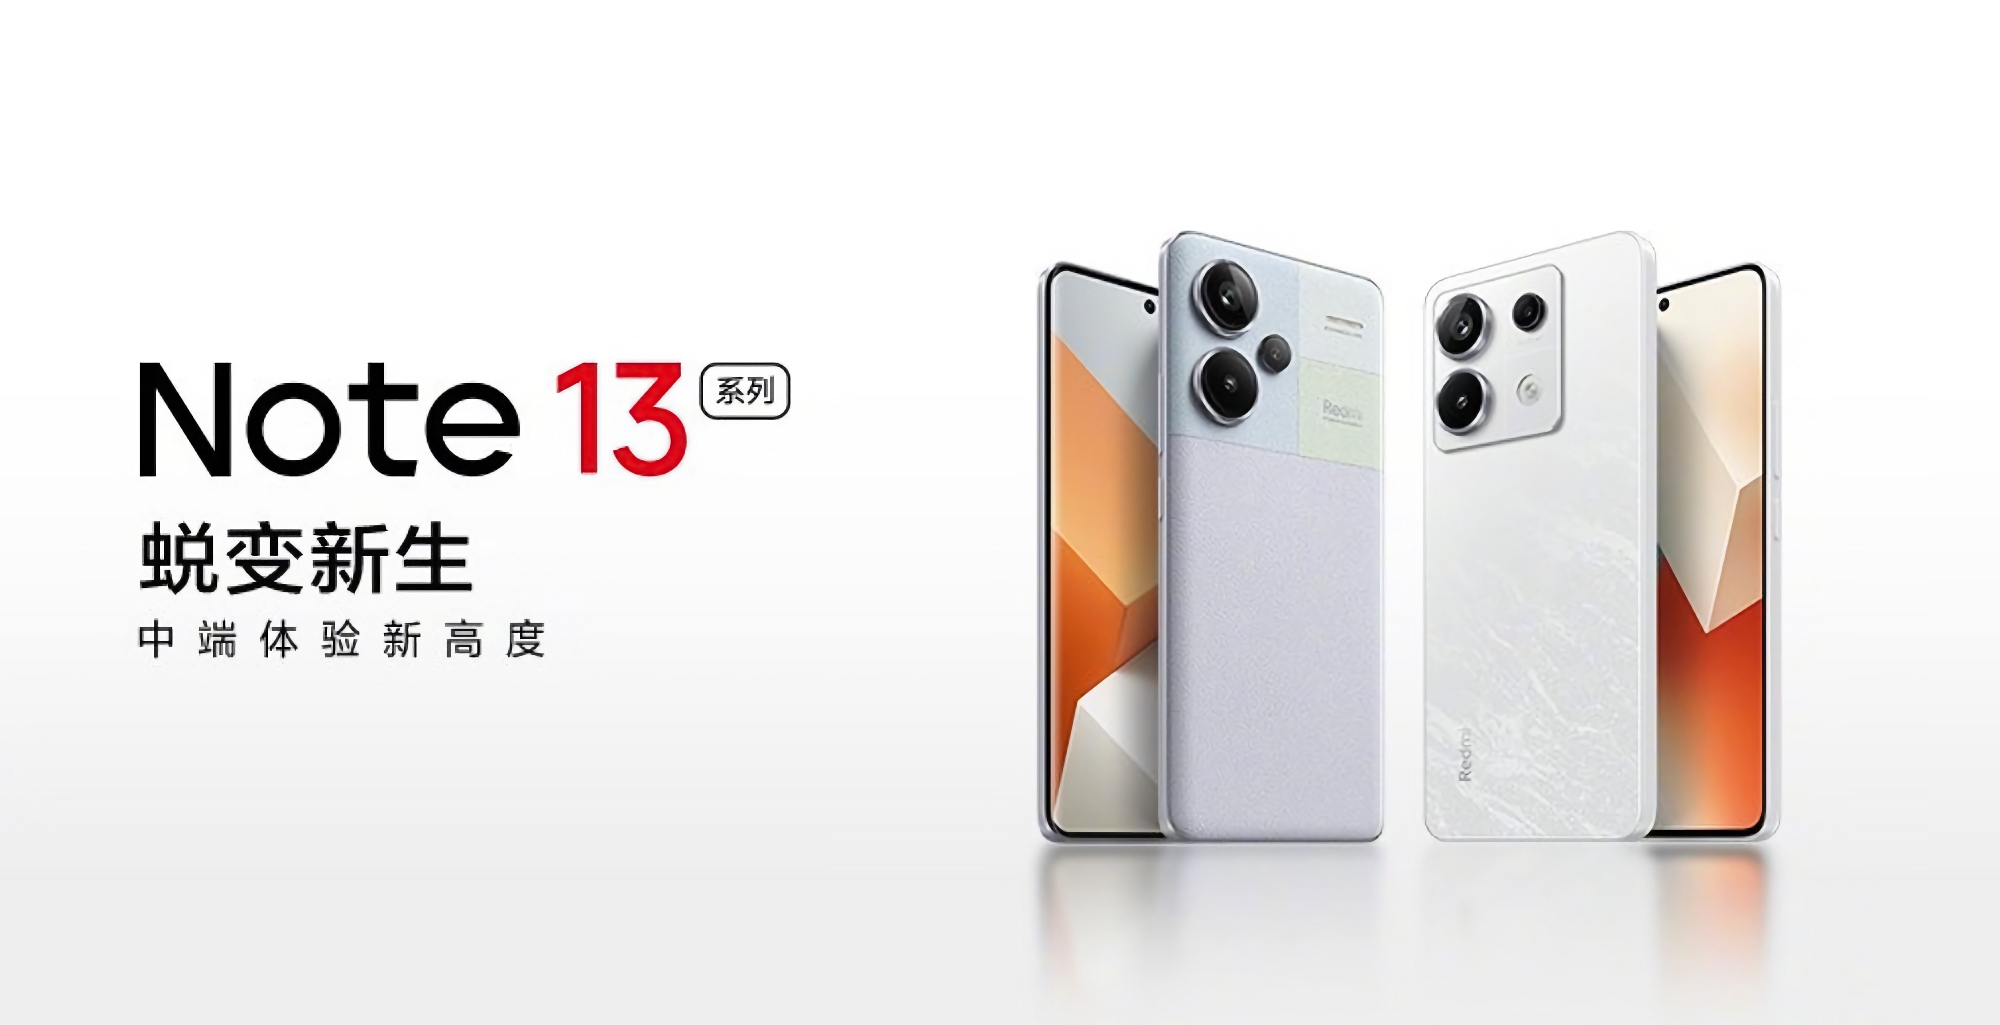 Det är officiellt: Xiaomi kommer att presentera Redmi Note 13-smartphoneuppställningen  den 21 september